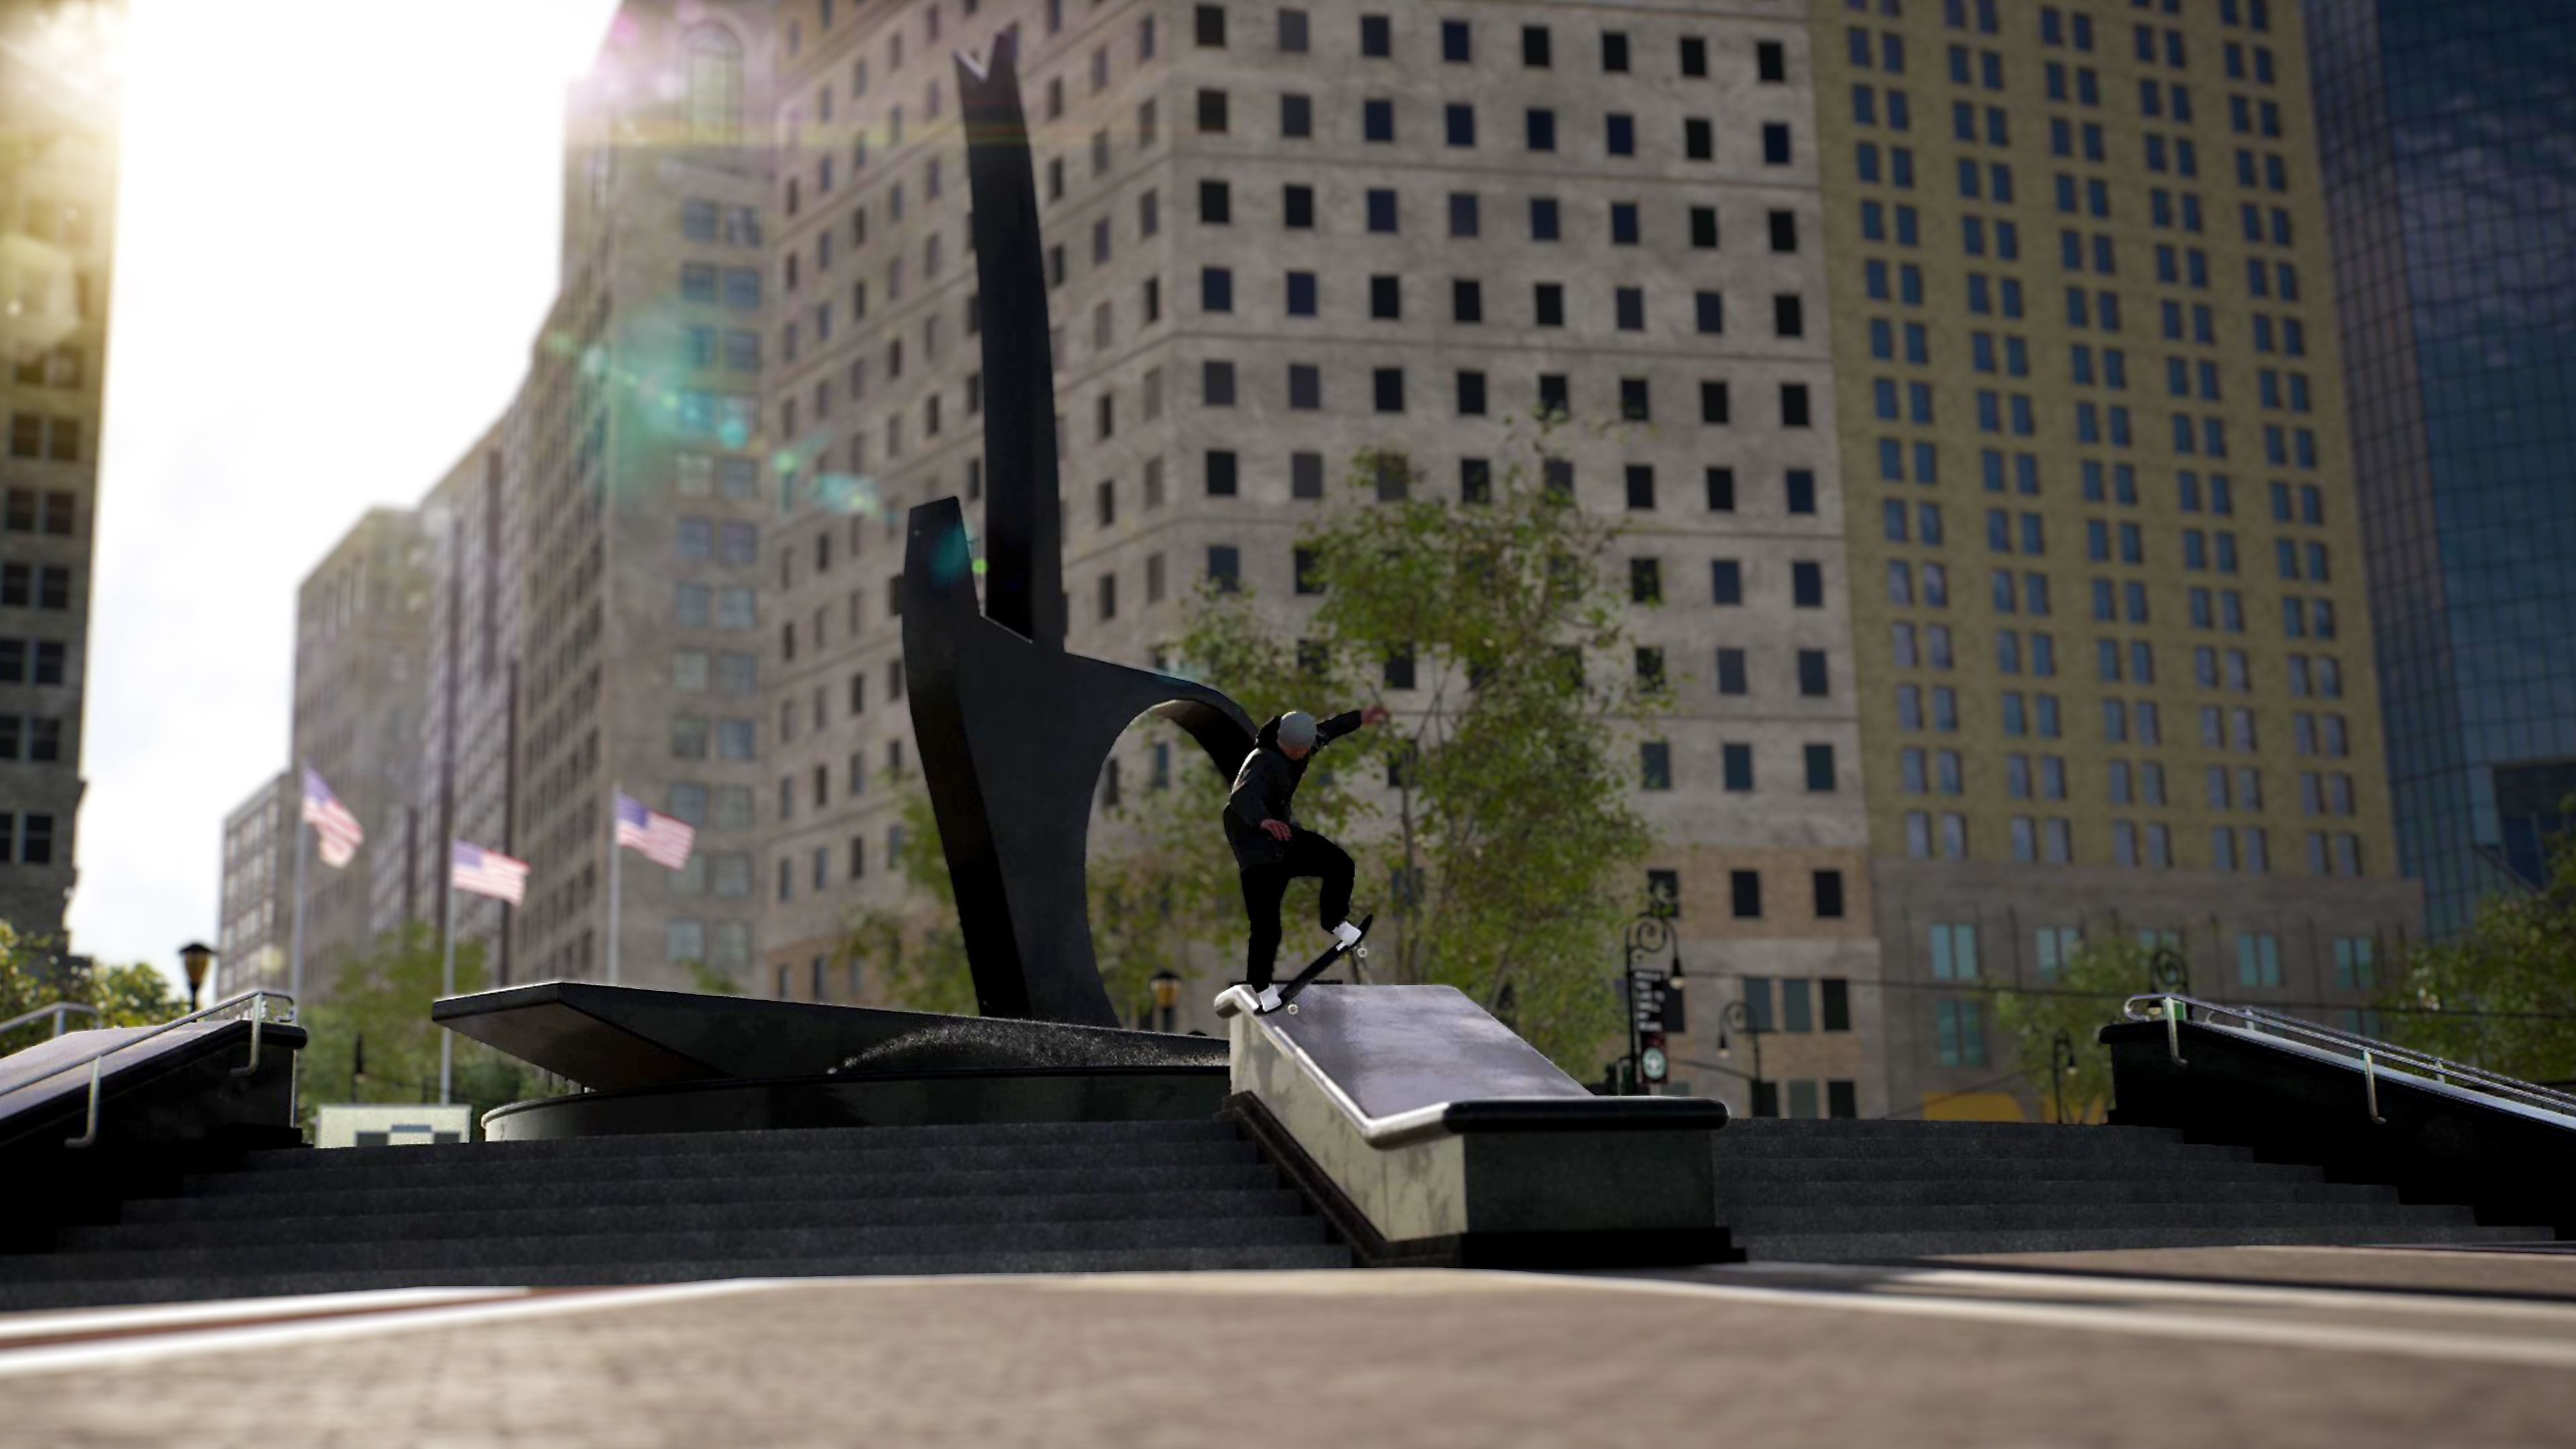 Session: Skate Sim - Capture d'écran montrant un skateboarder faisant un grind sur un rebord d'une place